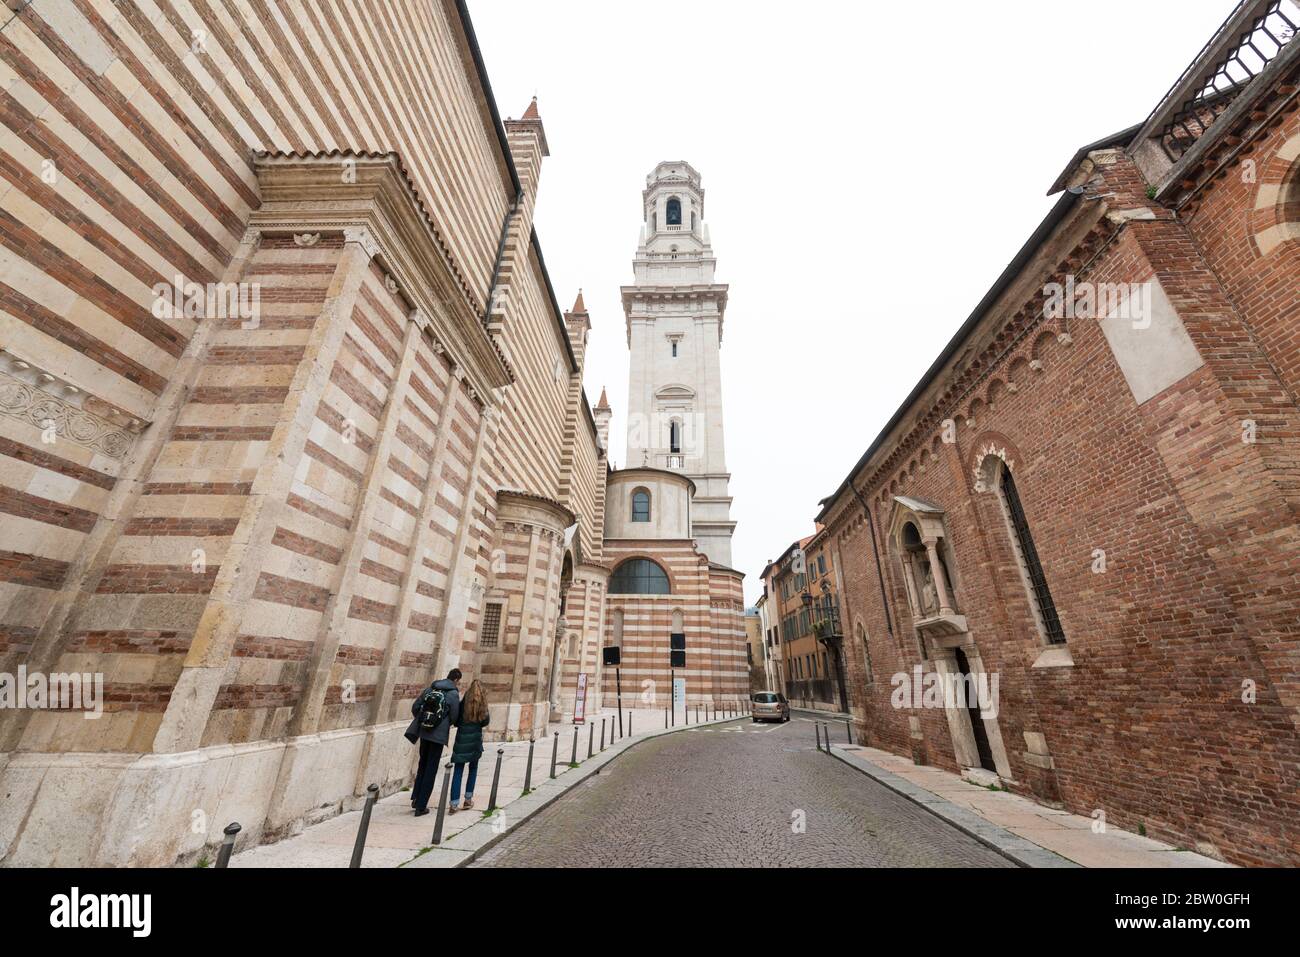 VERONA, ITALIA - 15, MARZO, 2018: Imagen horizontal de las calles antiguas cerca de la catedral de Santa María Matricolare, un recorrido turístico católico de Verona, Italia Foto de stock